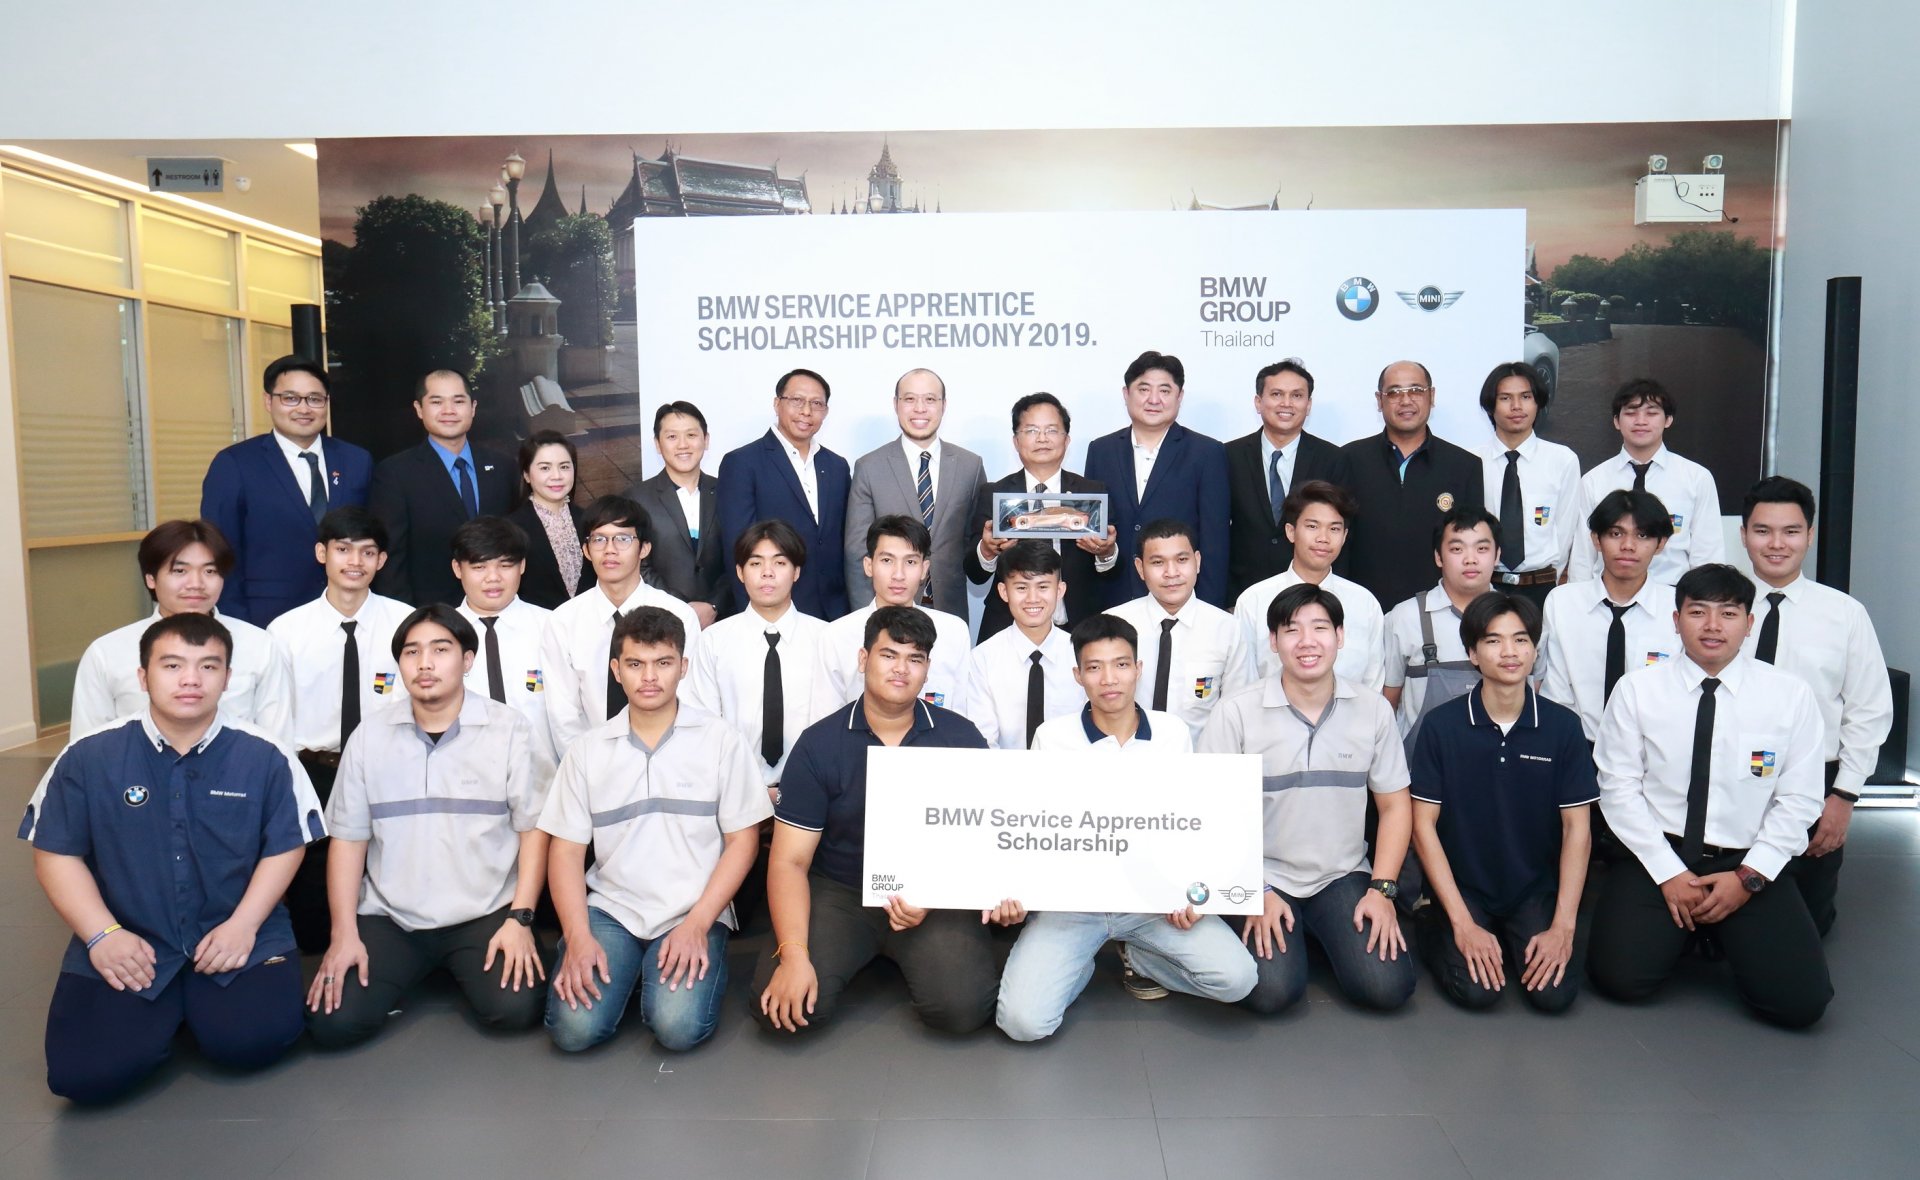 บีเอ็มดับเบิลยู กรุ๊ป ประเทศไทย สนับสนุนนักศึกษาอาชีวะไทยก้าวไกลระดับสากล มอบทุนการศึกษาในโครงการ BMW Service Apprentice Program แก่นักศึกษาจาก 3 สถาบัน